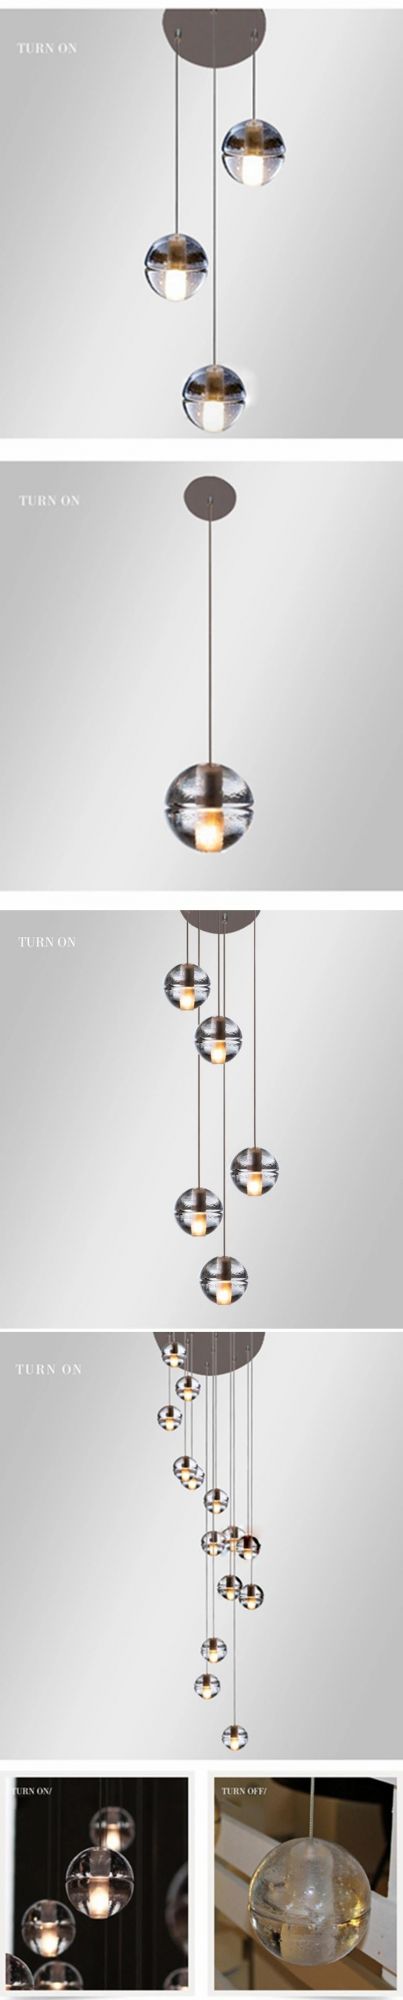 Modern Black Dining Room Clear Glass Ball Living Room LED Chandelier Pendant Lamp Light